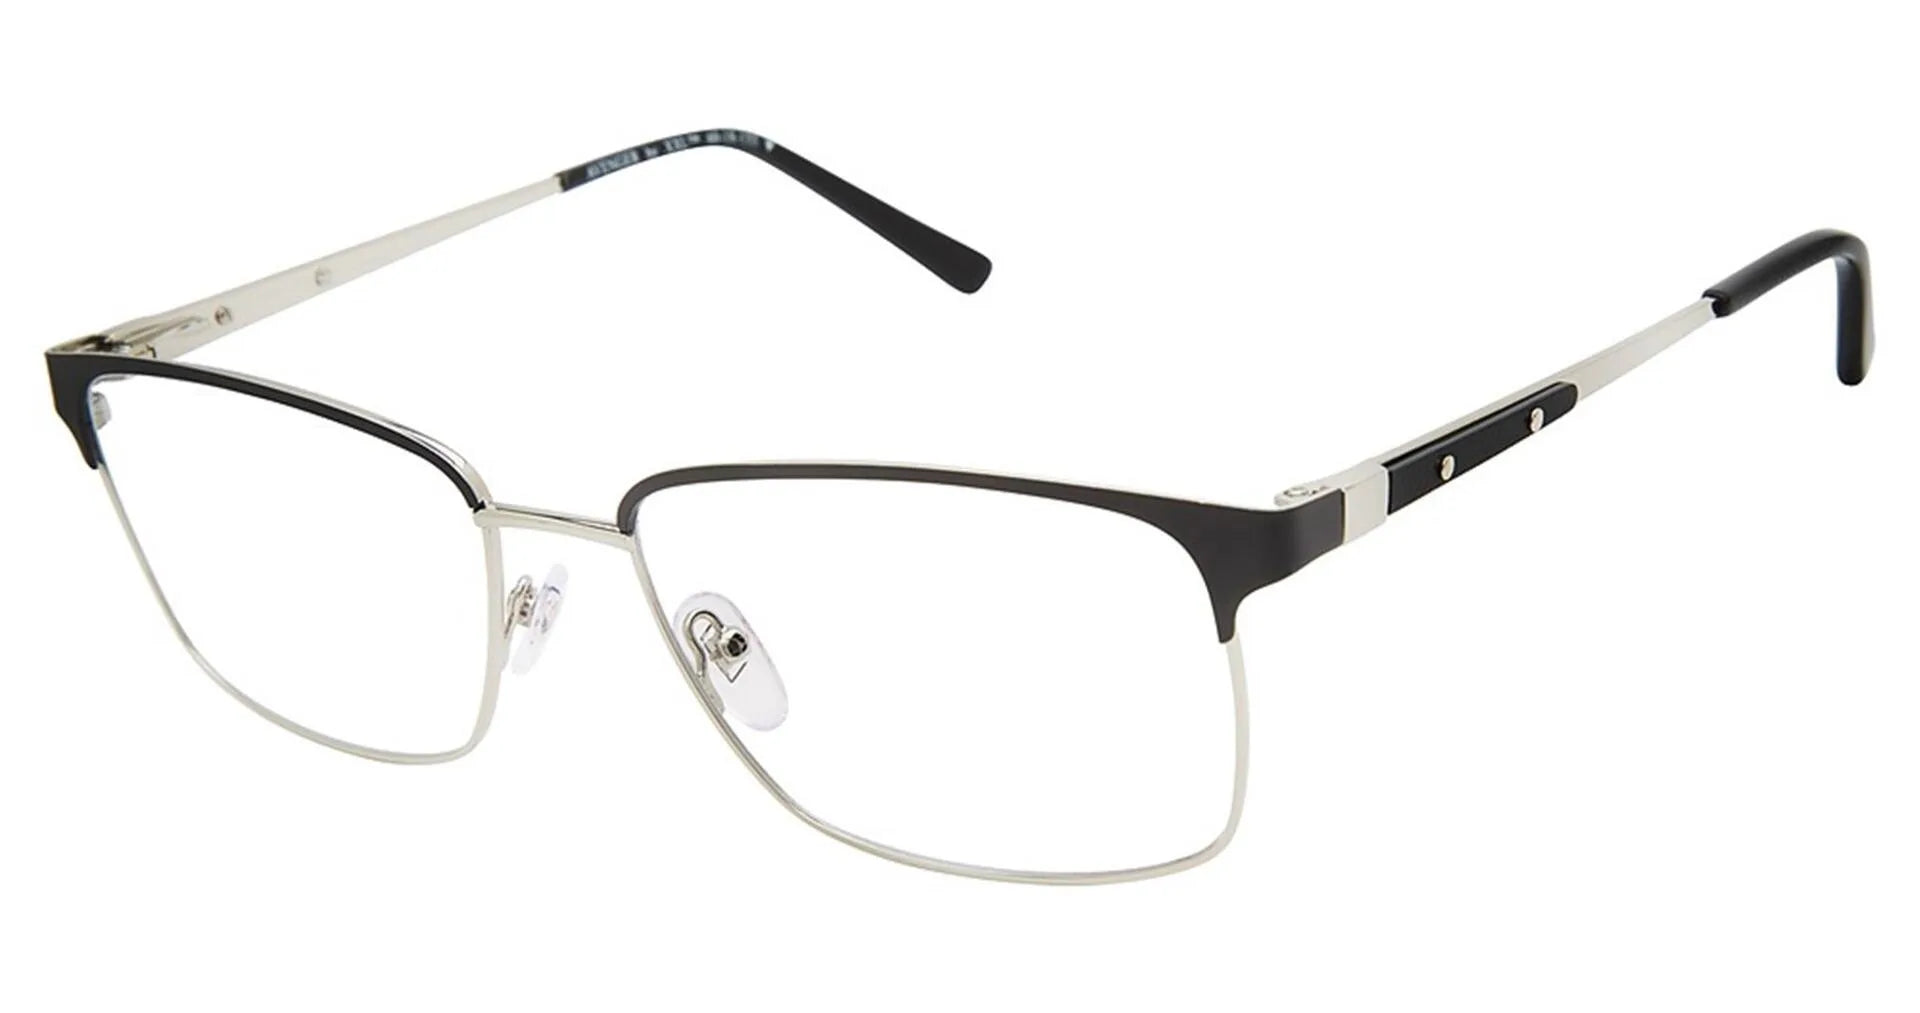 XXL Eyewear Avenger Eyeglasses Black